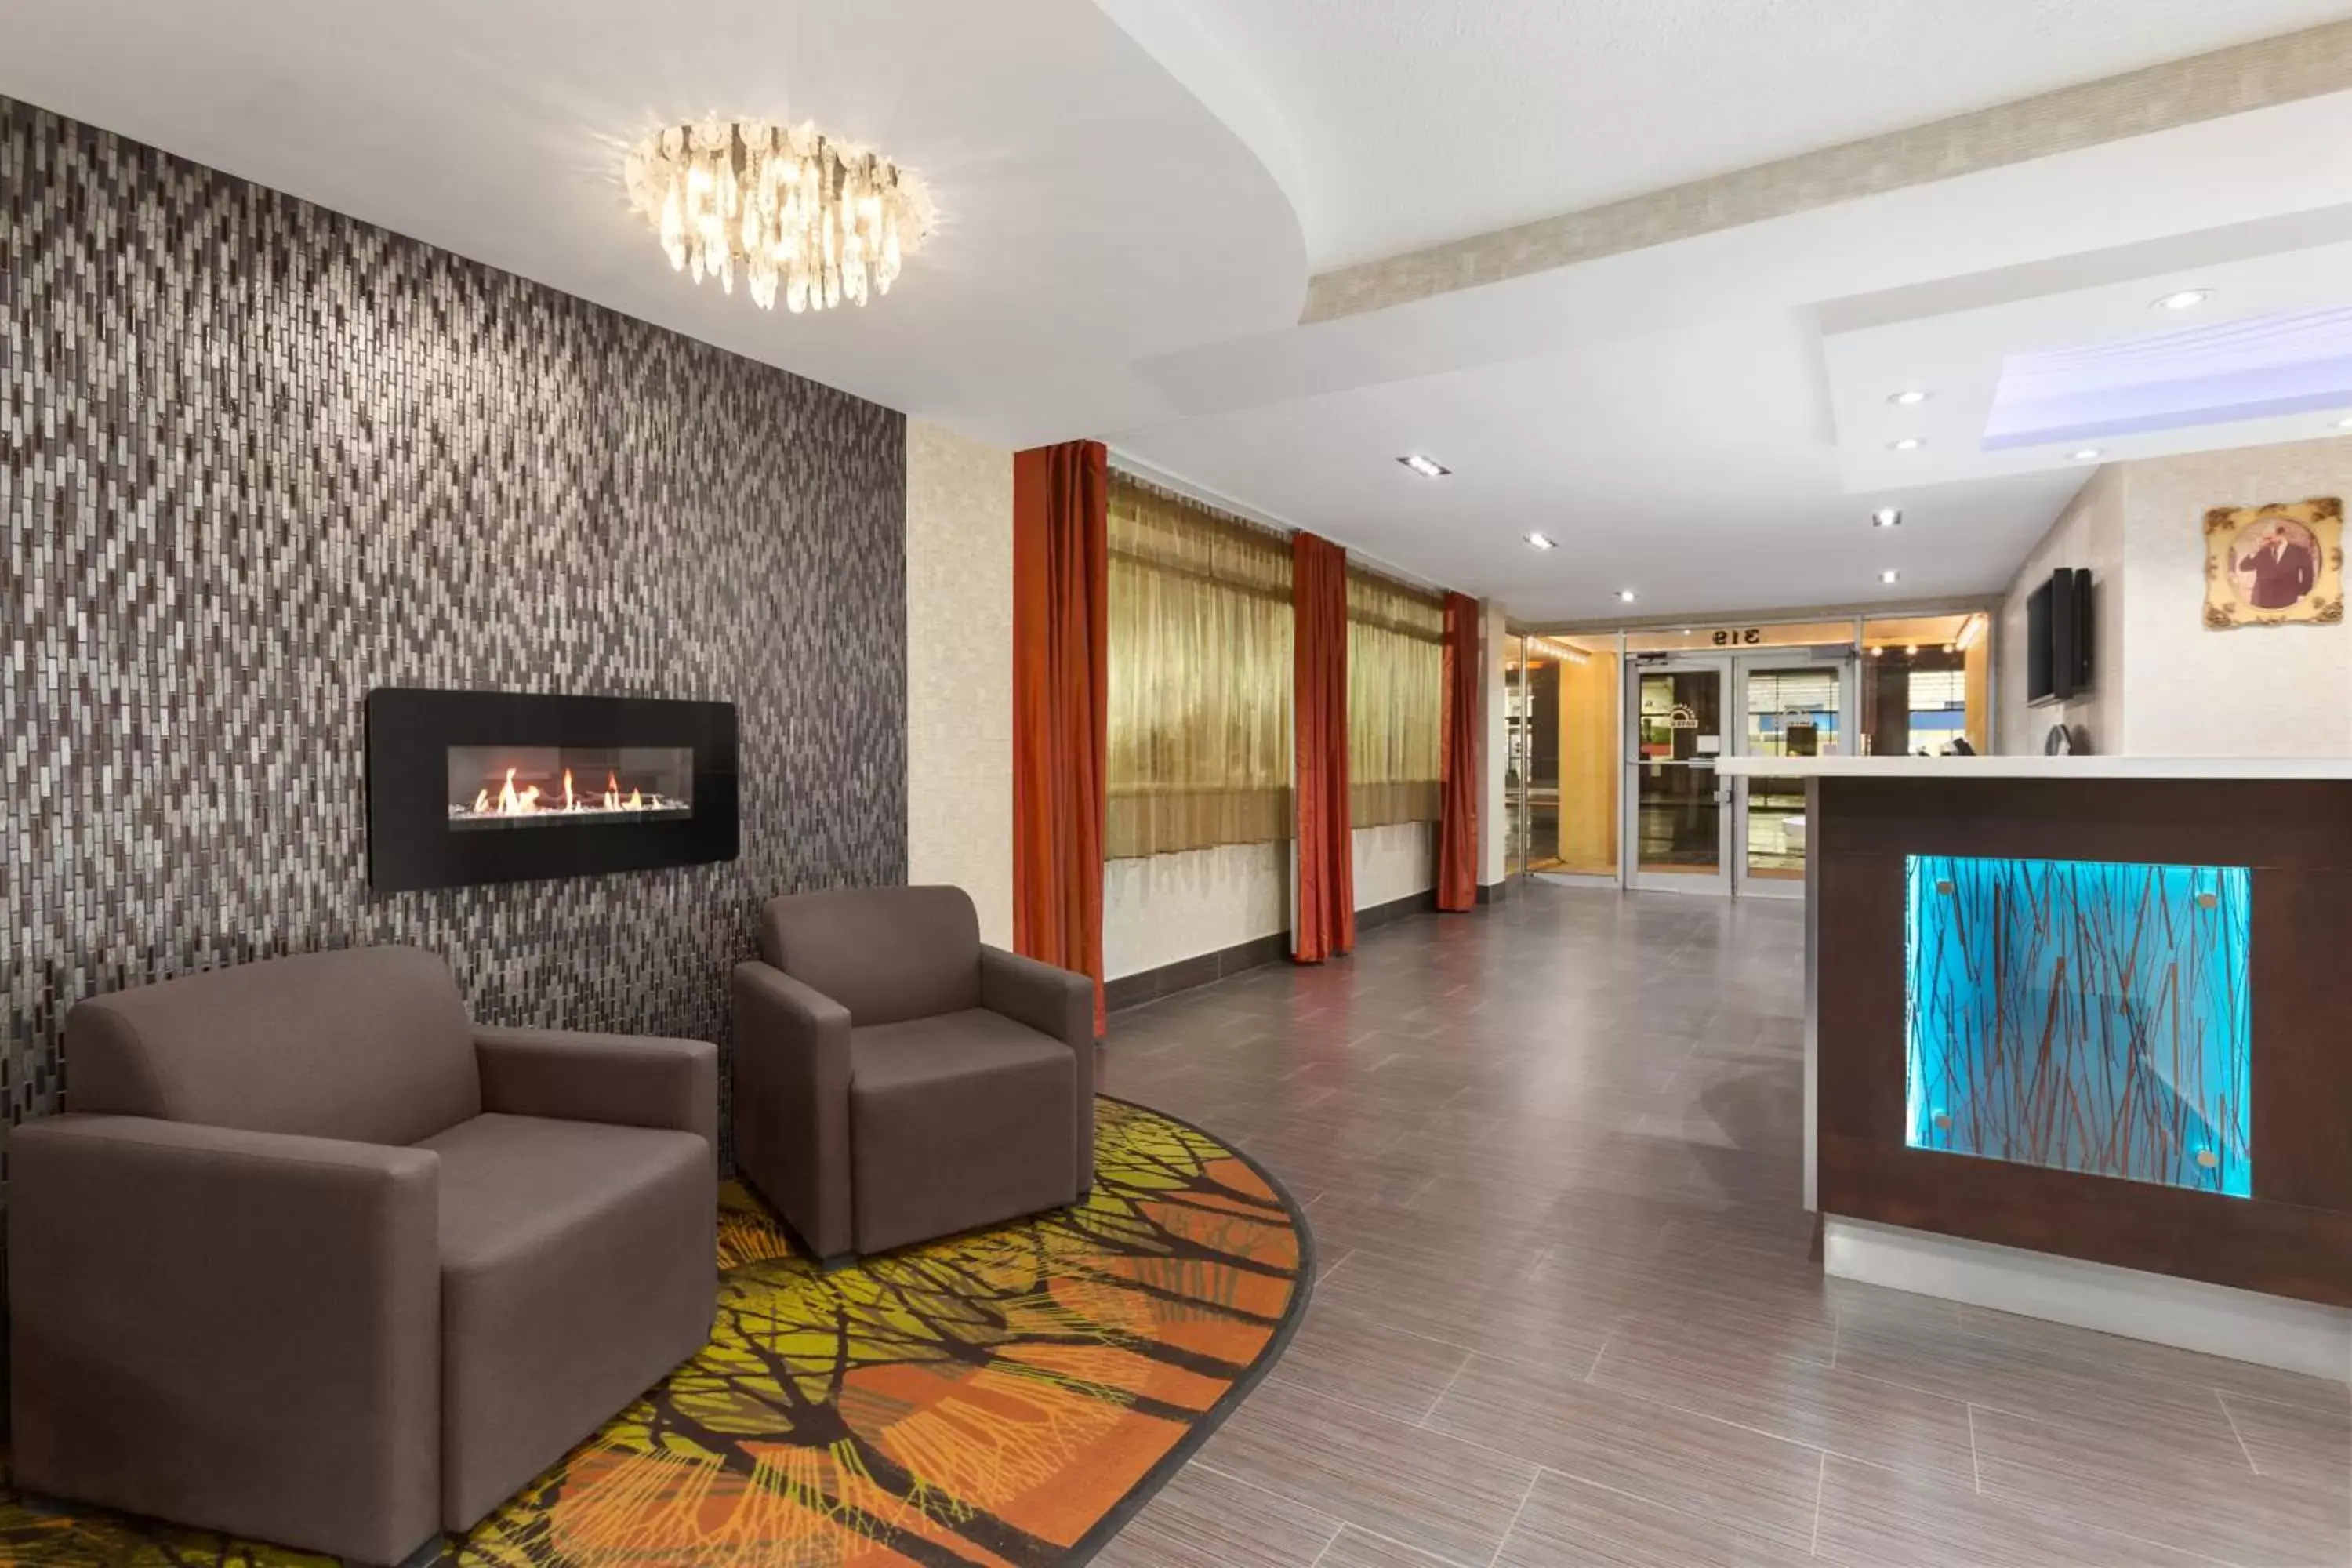 Lobby or reception, Lobby/Reception in Days Inn by Wyndham Ottawa